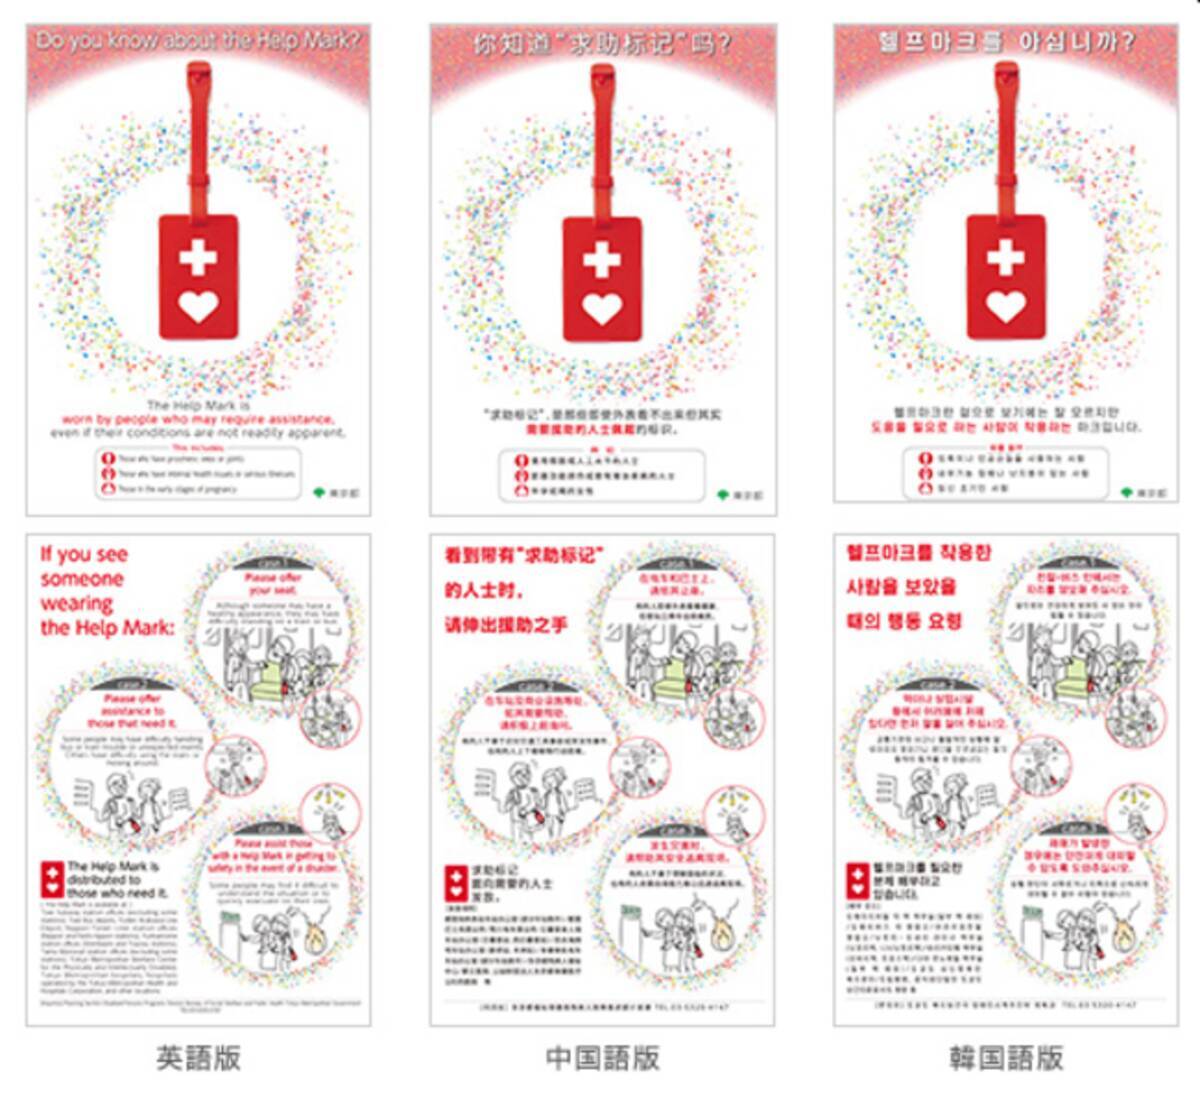 東京都では ヘルプマークを多言語で紹介するチラシとホームページを制作しました その他 中日新聞 日本てんかん協会 波の会 の取り組みをご紹介 年10月29日 エキサイトニュース